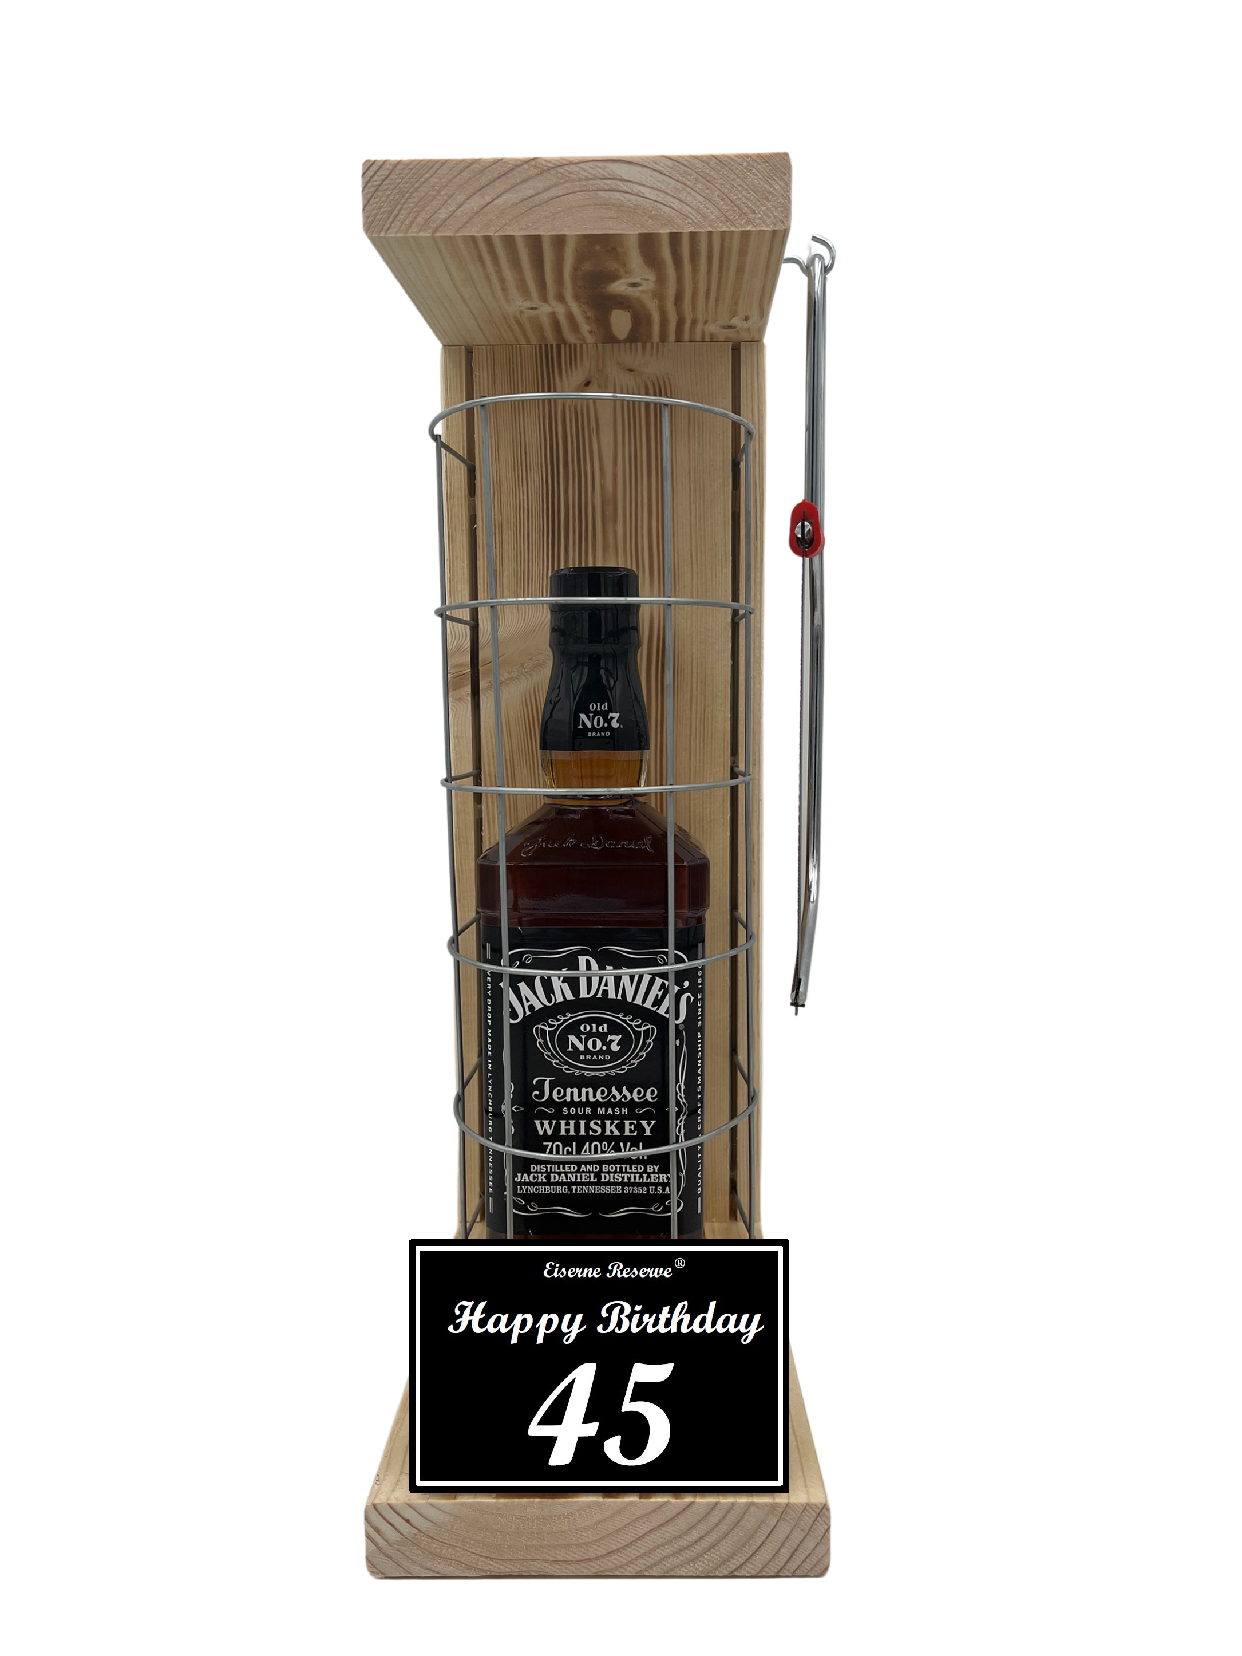 Jack Daniels Geschenk zum 45 Geburtstag - Eiserne Reserve Gitterkäfig